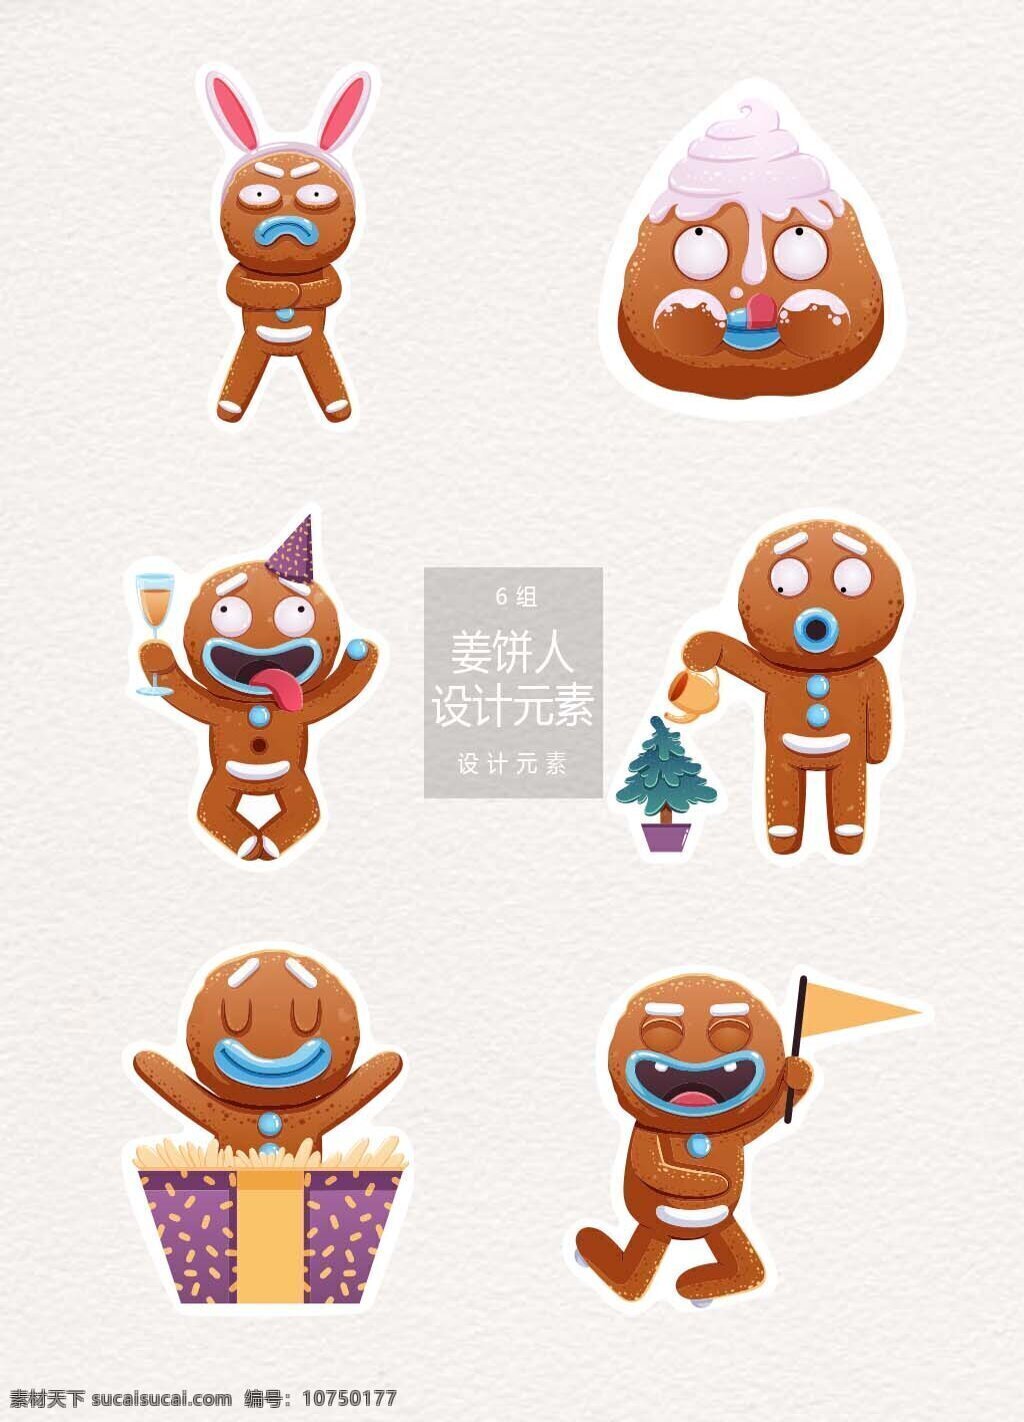 圣诞 卡通 姜饼 人 元素 设计元素 圣诞节 饼干 表情 笑脸 姜饼人 卡通姜饼人